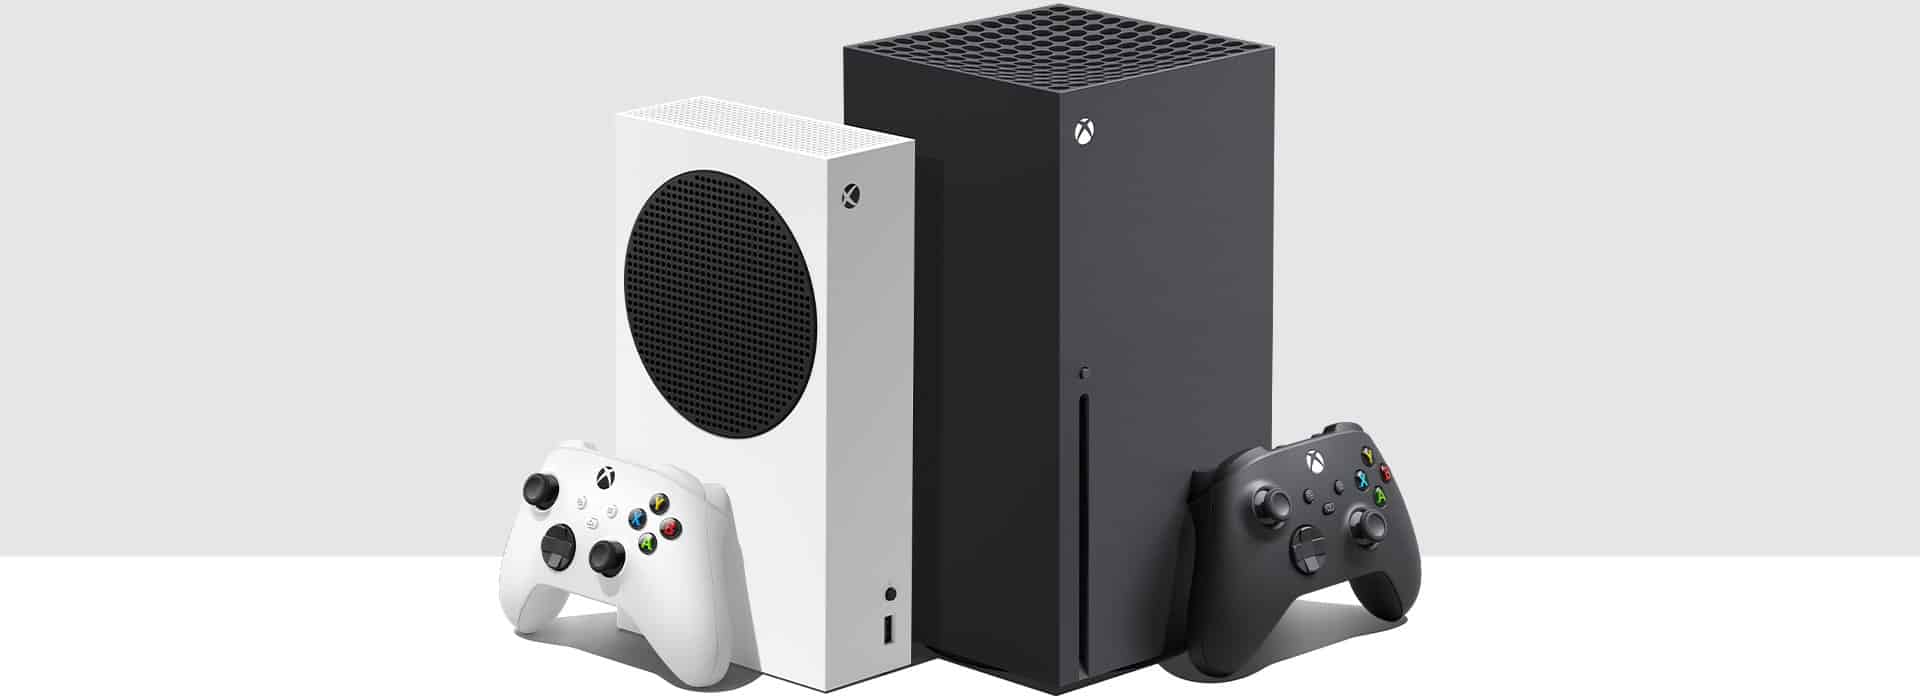 Beven Integreren veerboot List Of Xbox Console Generations In Order - Videogamer